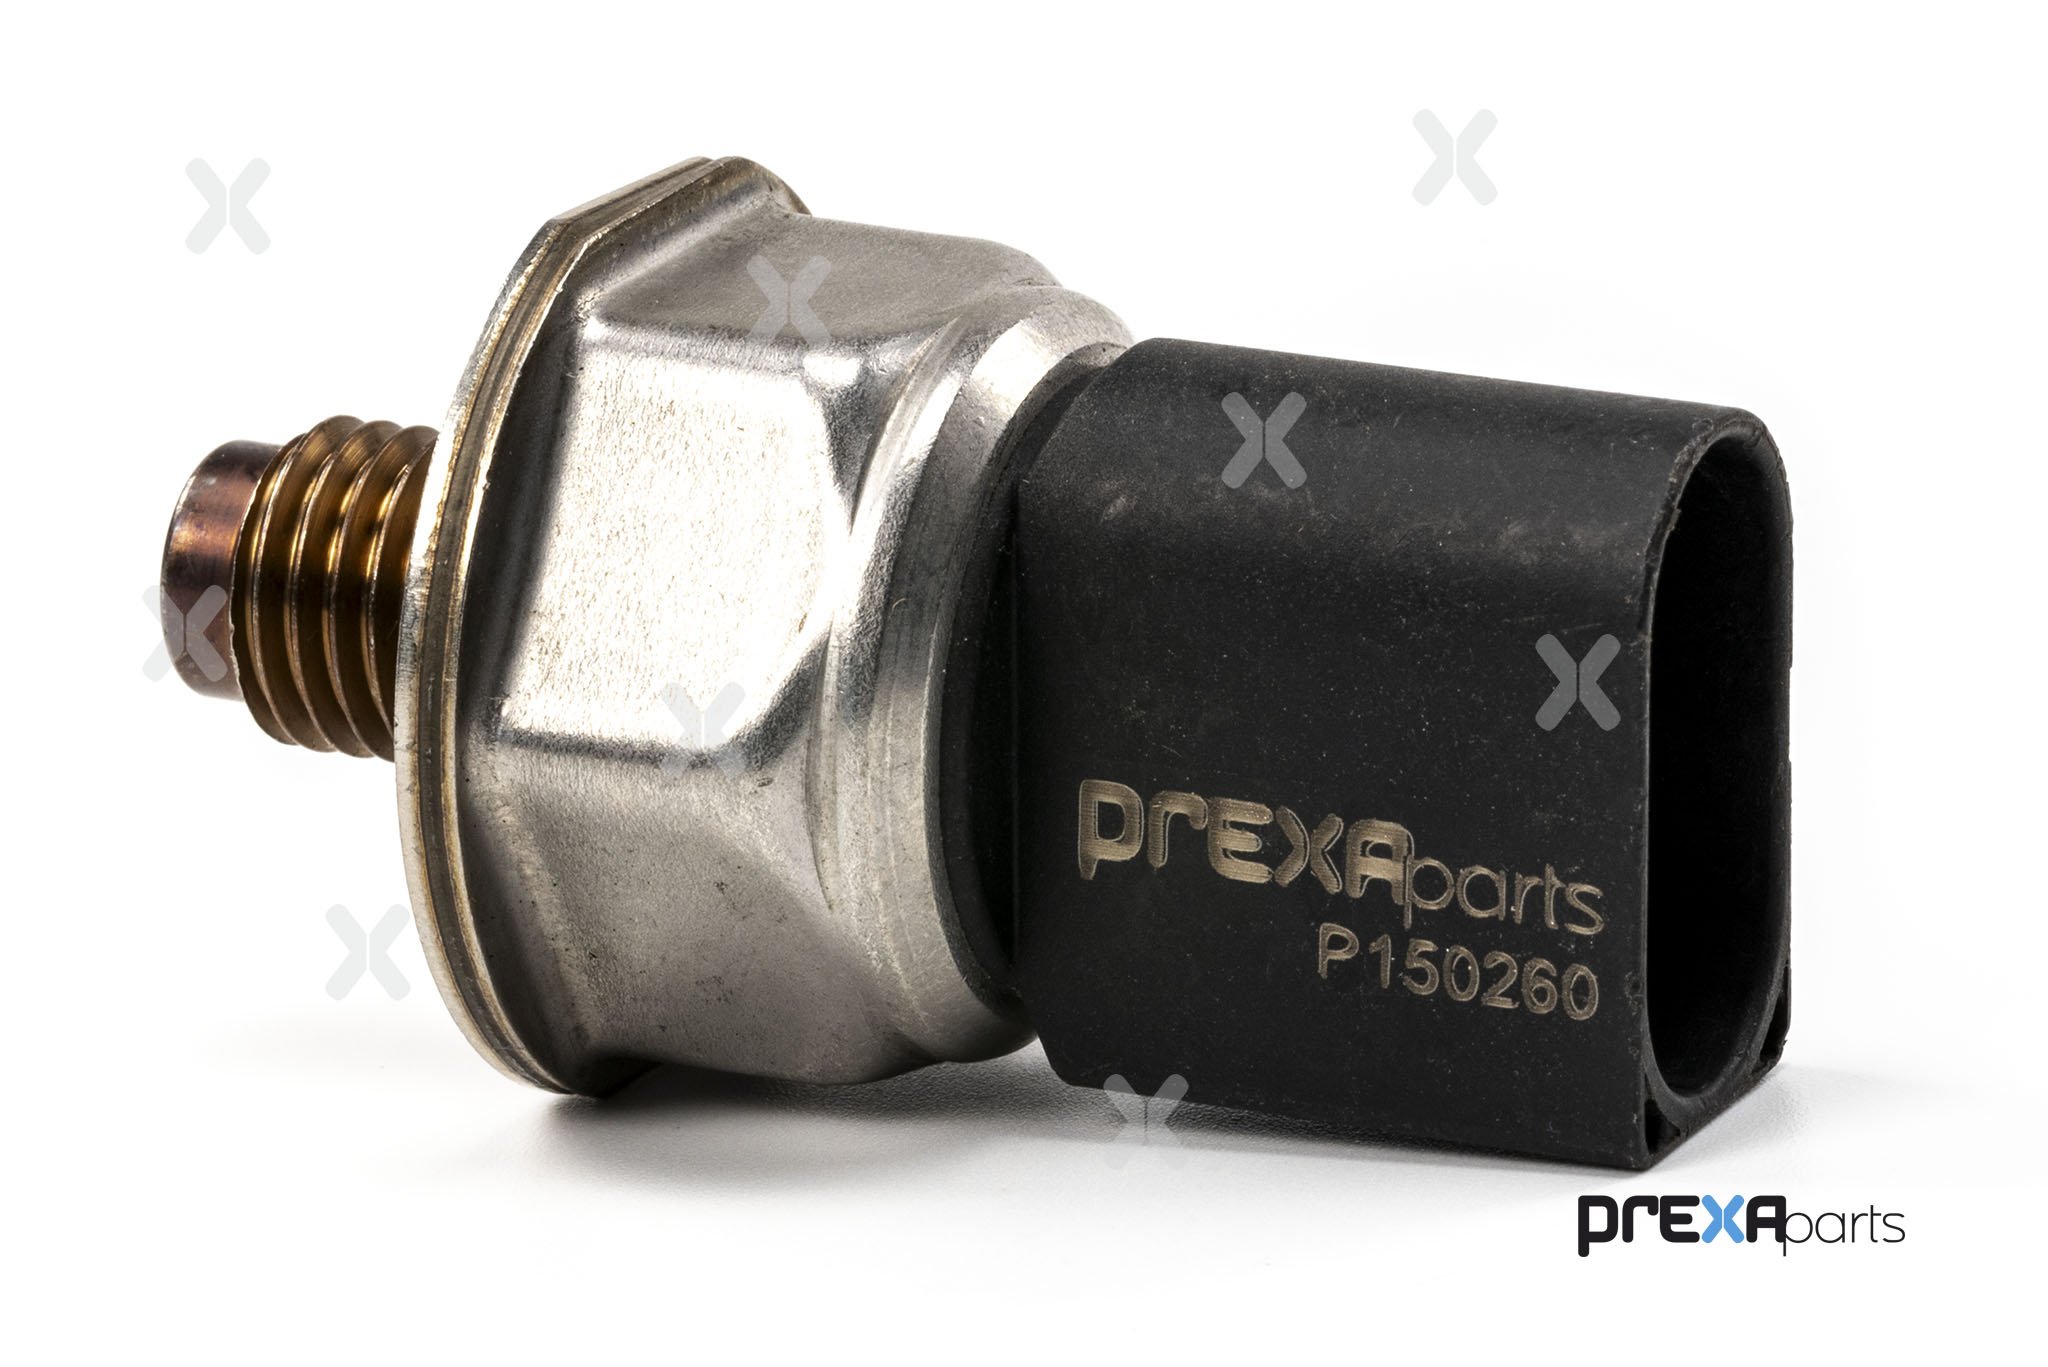 PREXAparts P150260